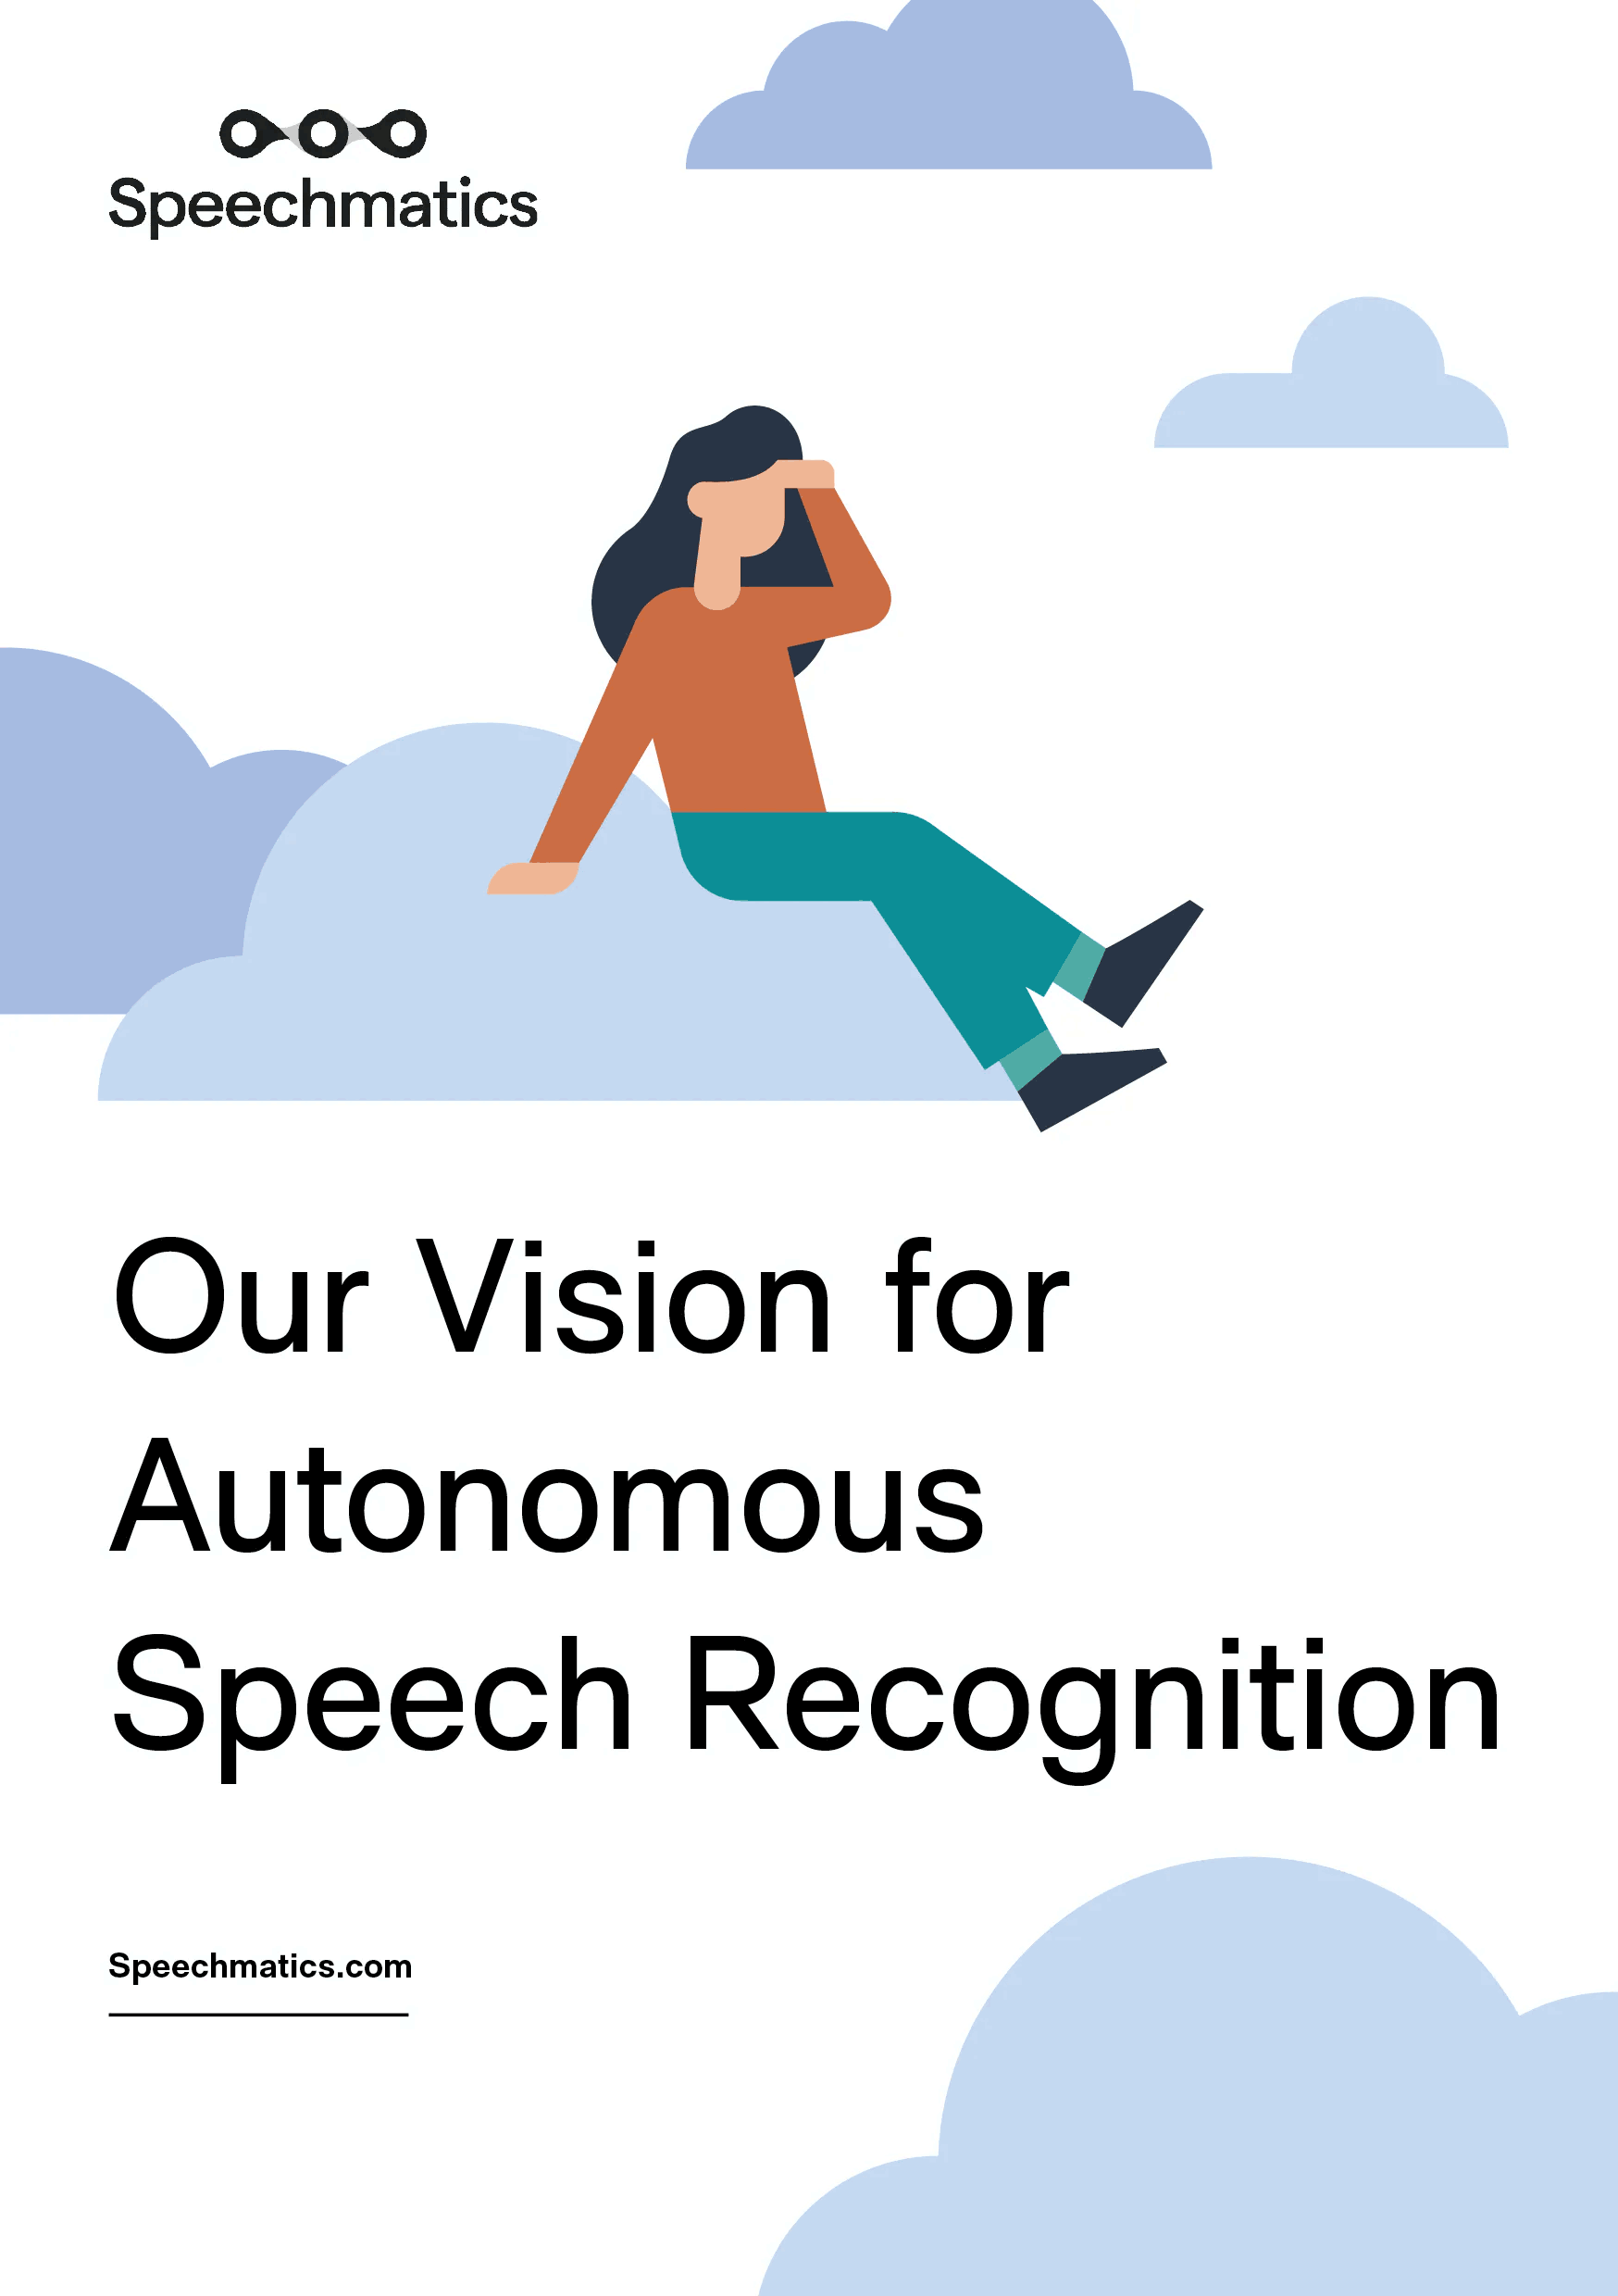 Our Vision for Autonomous Speech Recognition